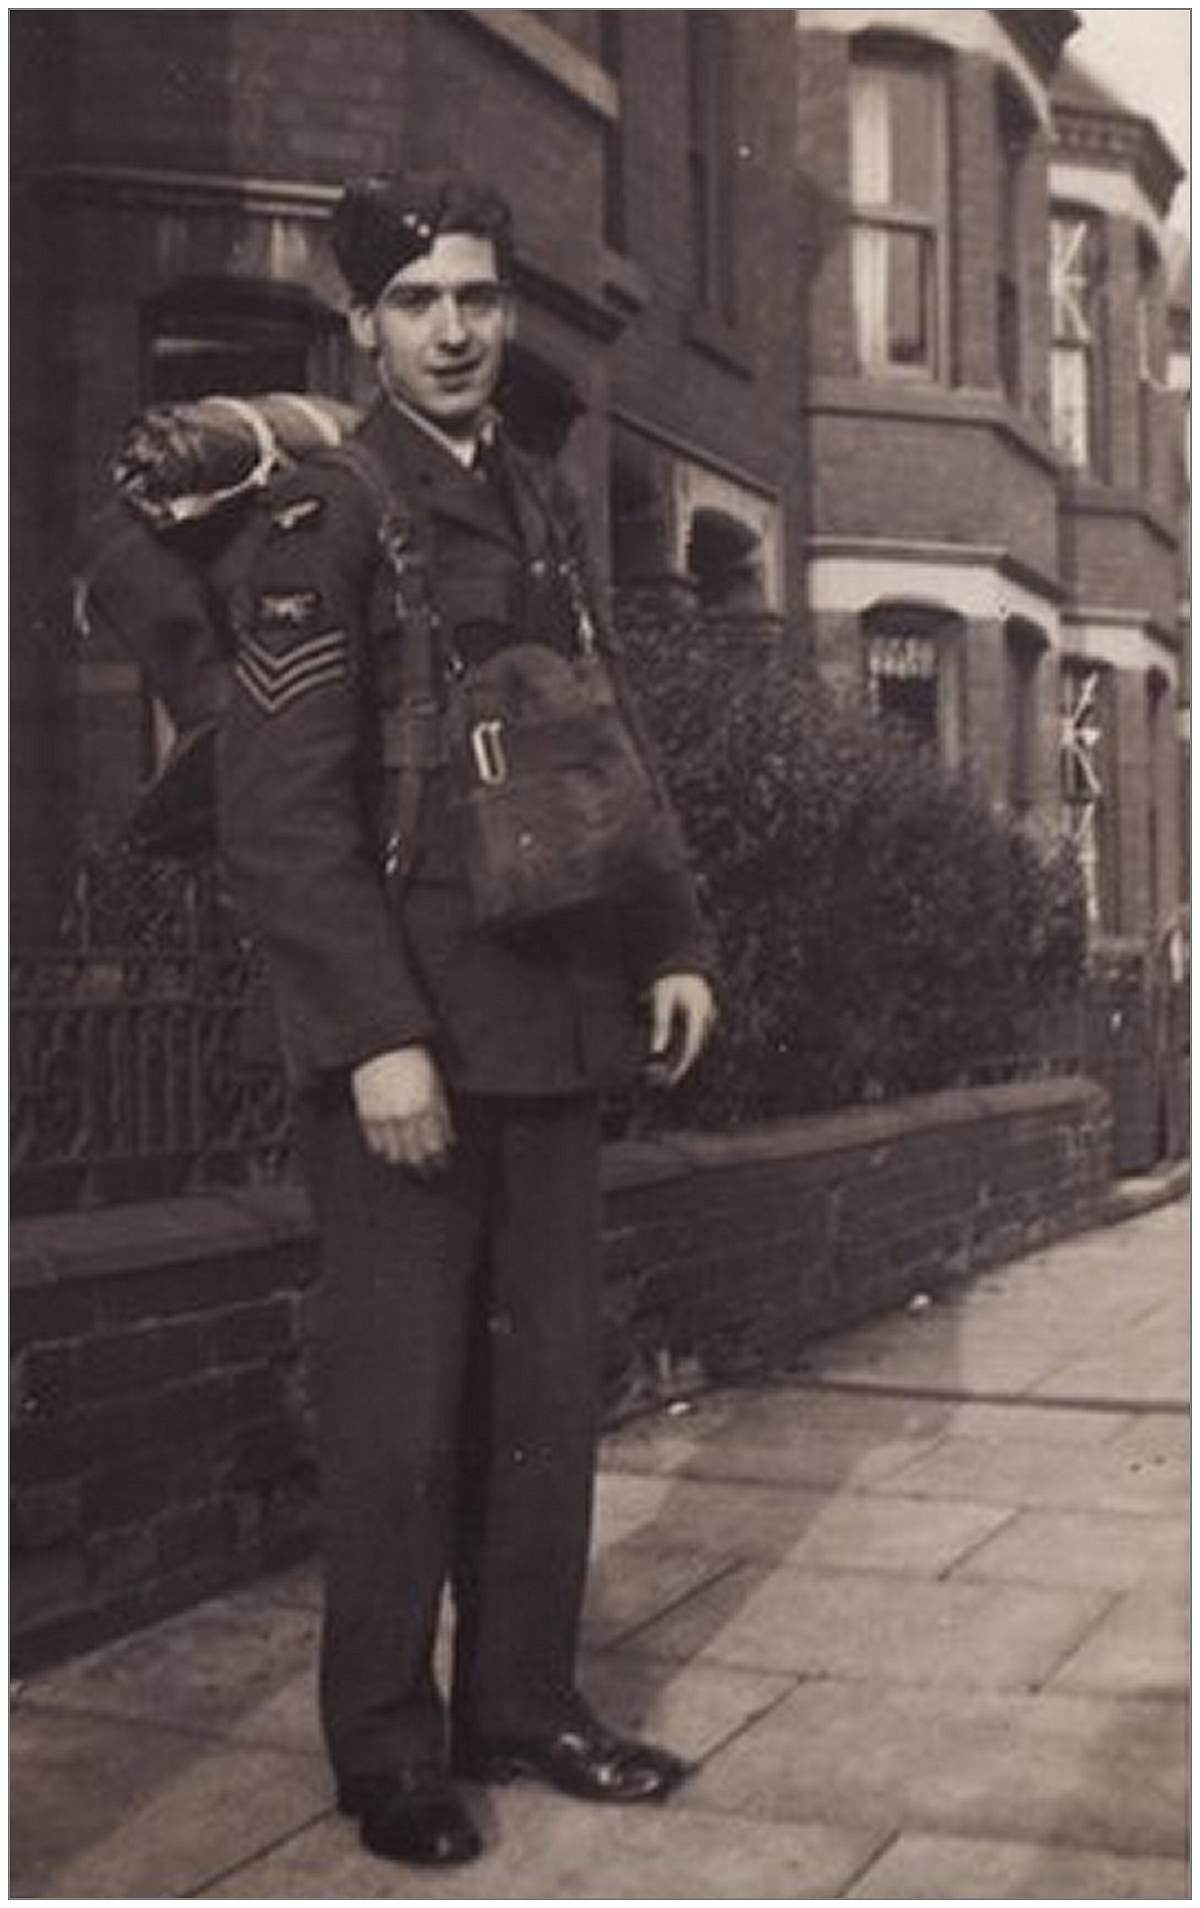 643332  - Sgt. Eric William Jones - Coventry, 1940